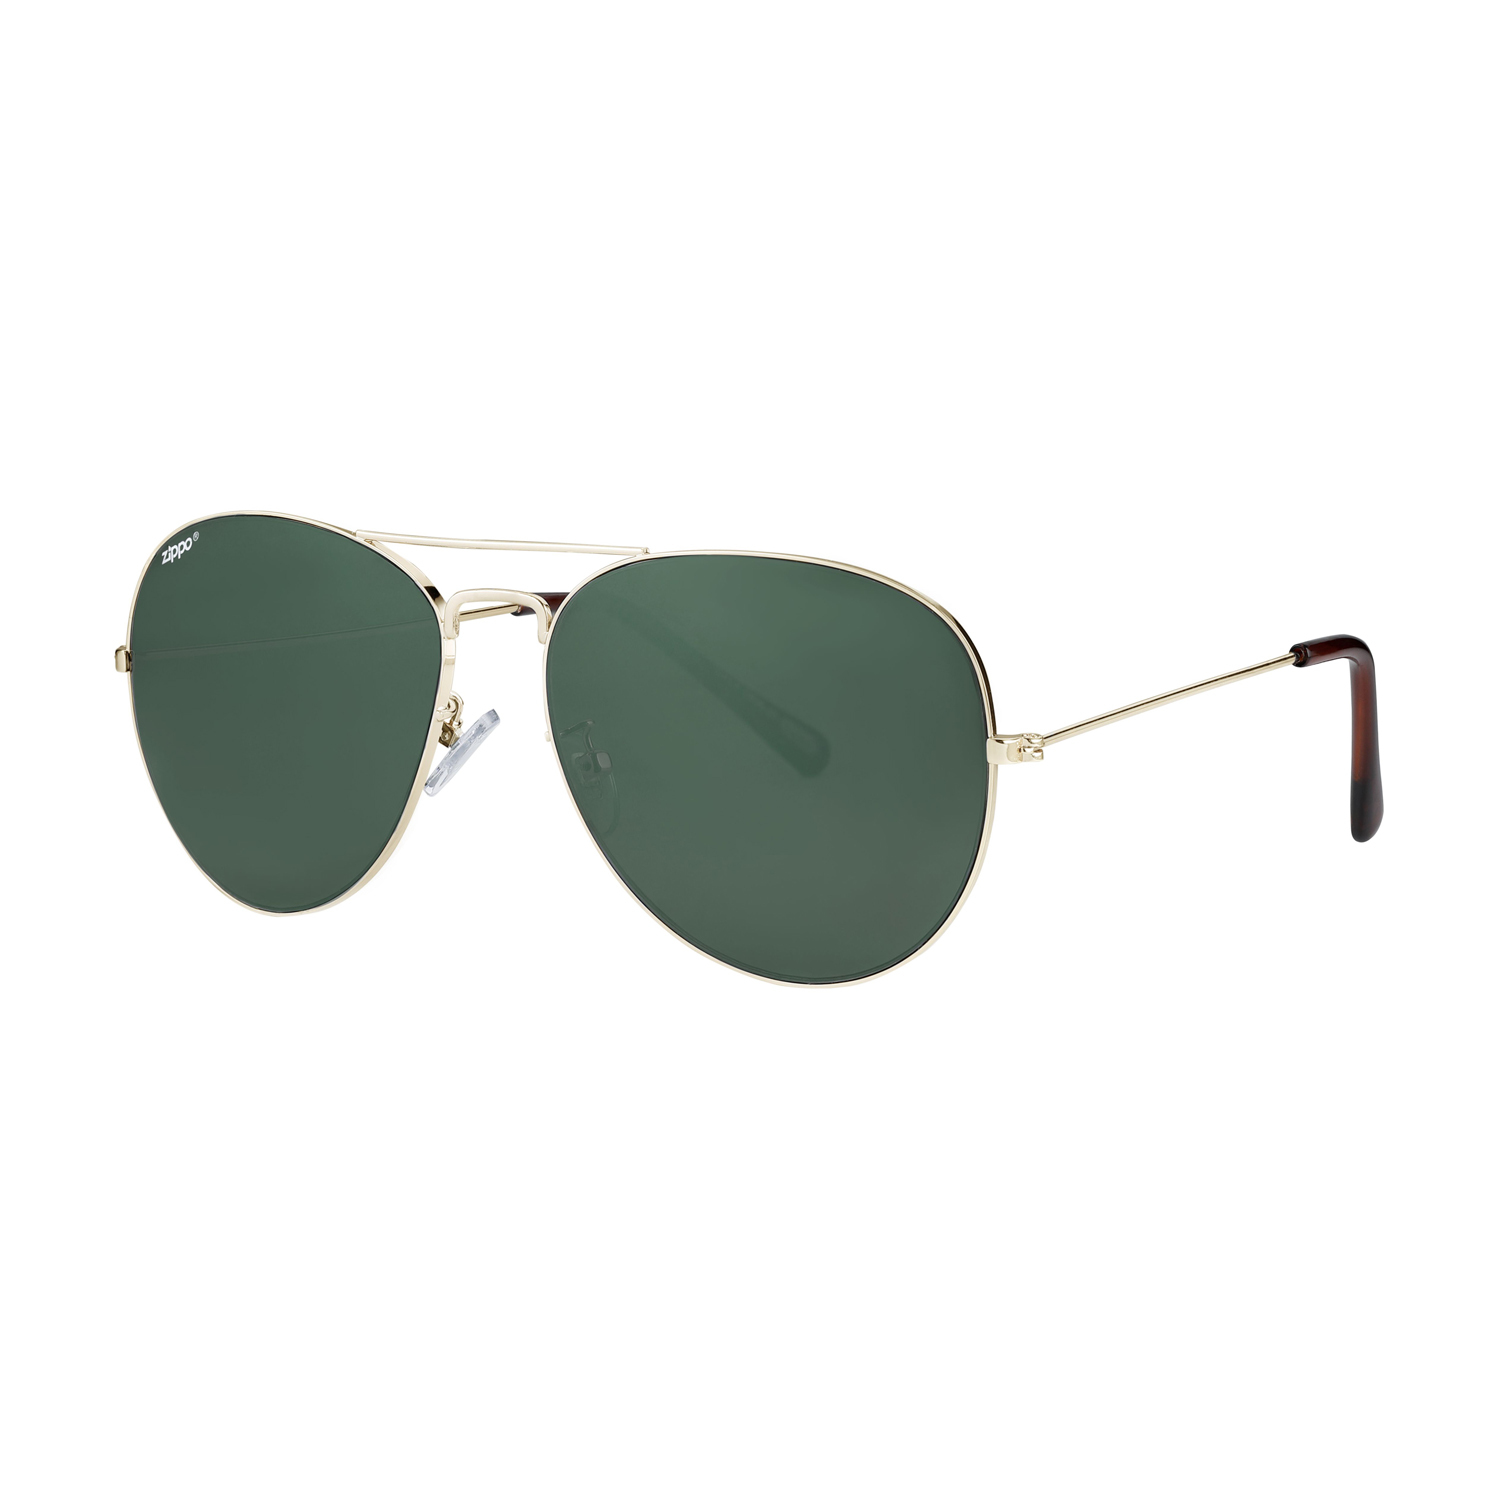 Очки солнцезащитные ZIPPO OB36-32, Мужские аксессуары, Солнцезащитные очки